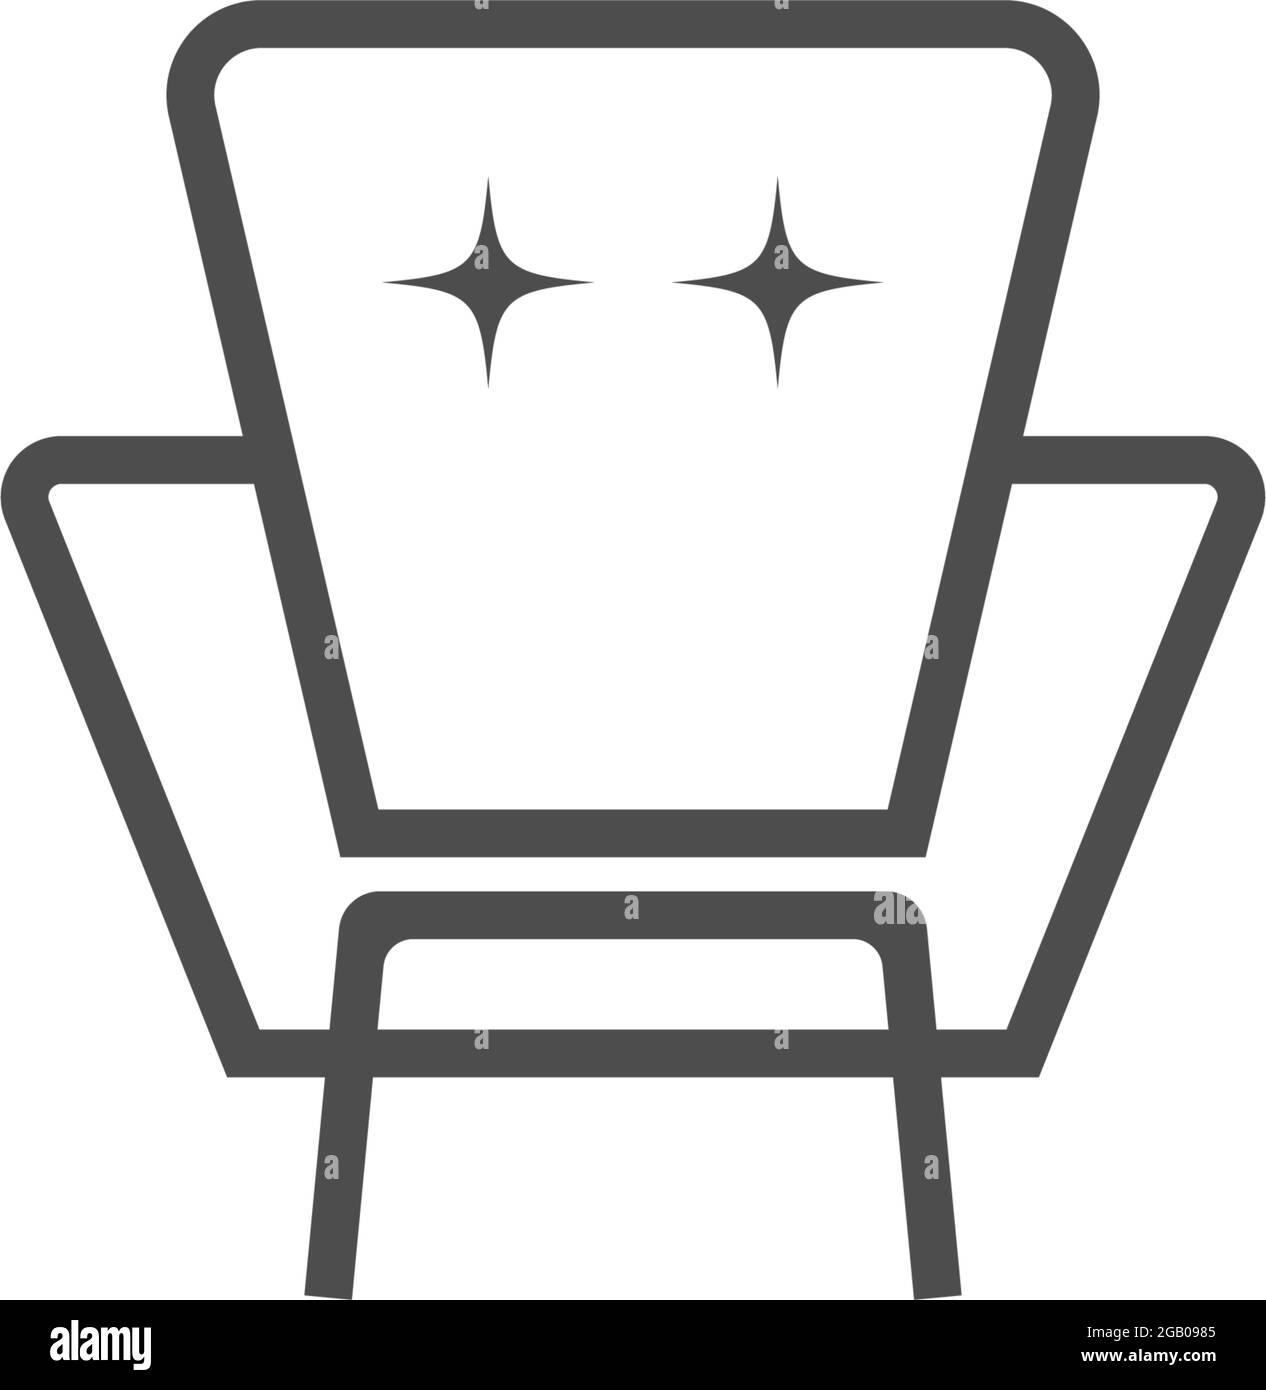 Furniture logo icon vector flat design template Stock Vector